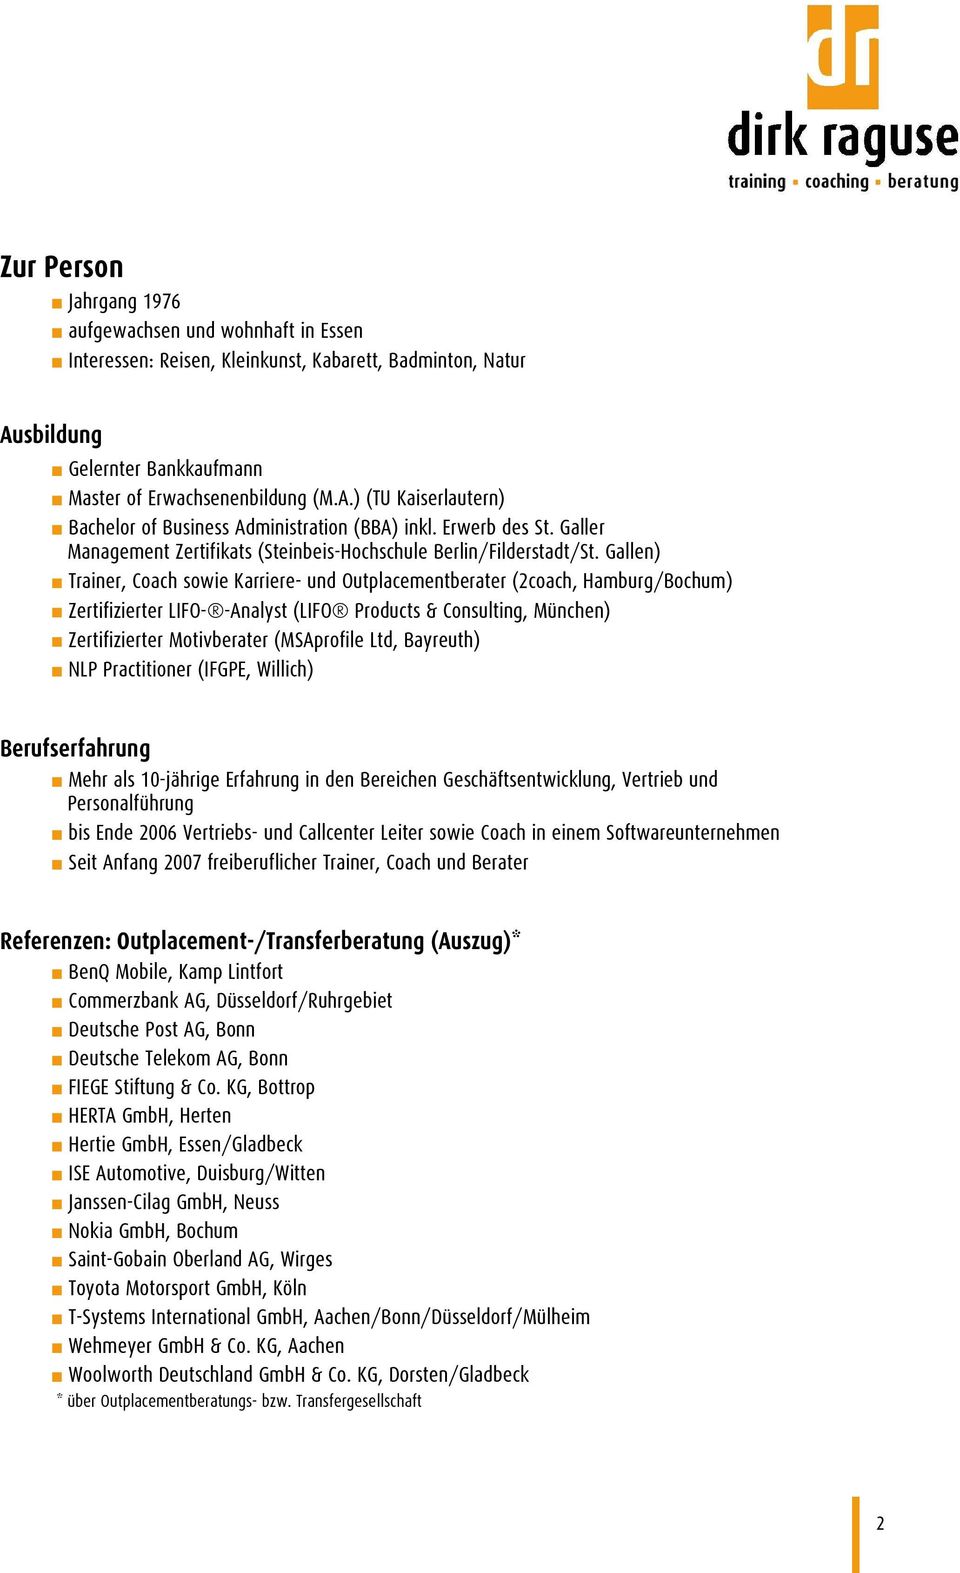 Gallen) Trainer, Coach sowie Karriere- und Outplacementberater (2coach, Hamburg/Bochum) Zertifizierter LIFO- -Analyst (LIFO Products & Consulting, München) Zertifizierter Motivberater (MSAprofile